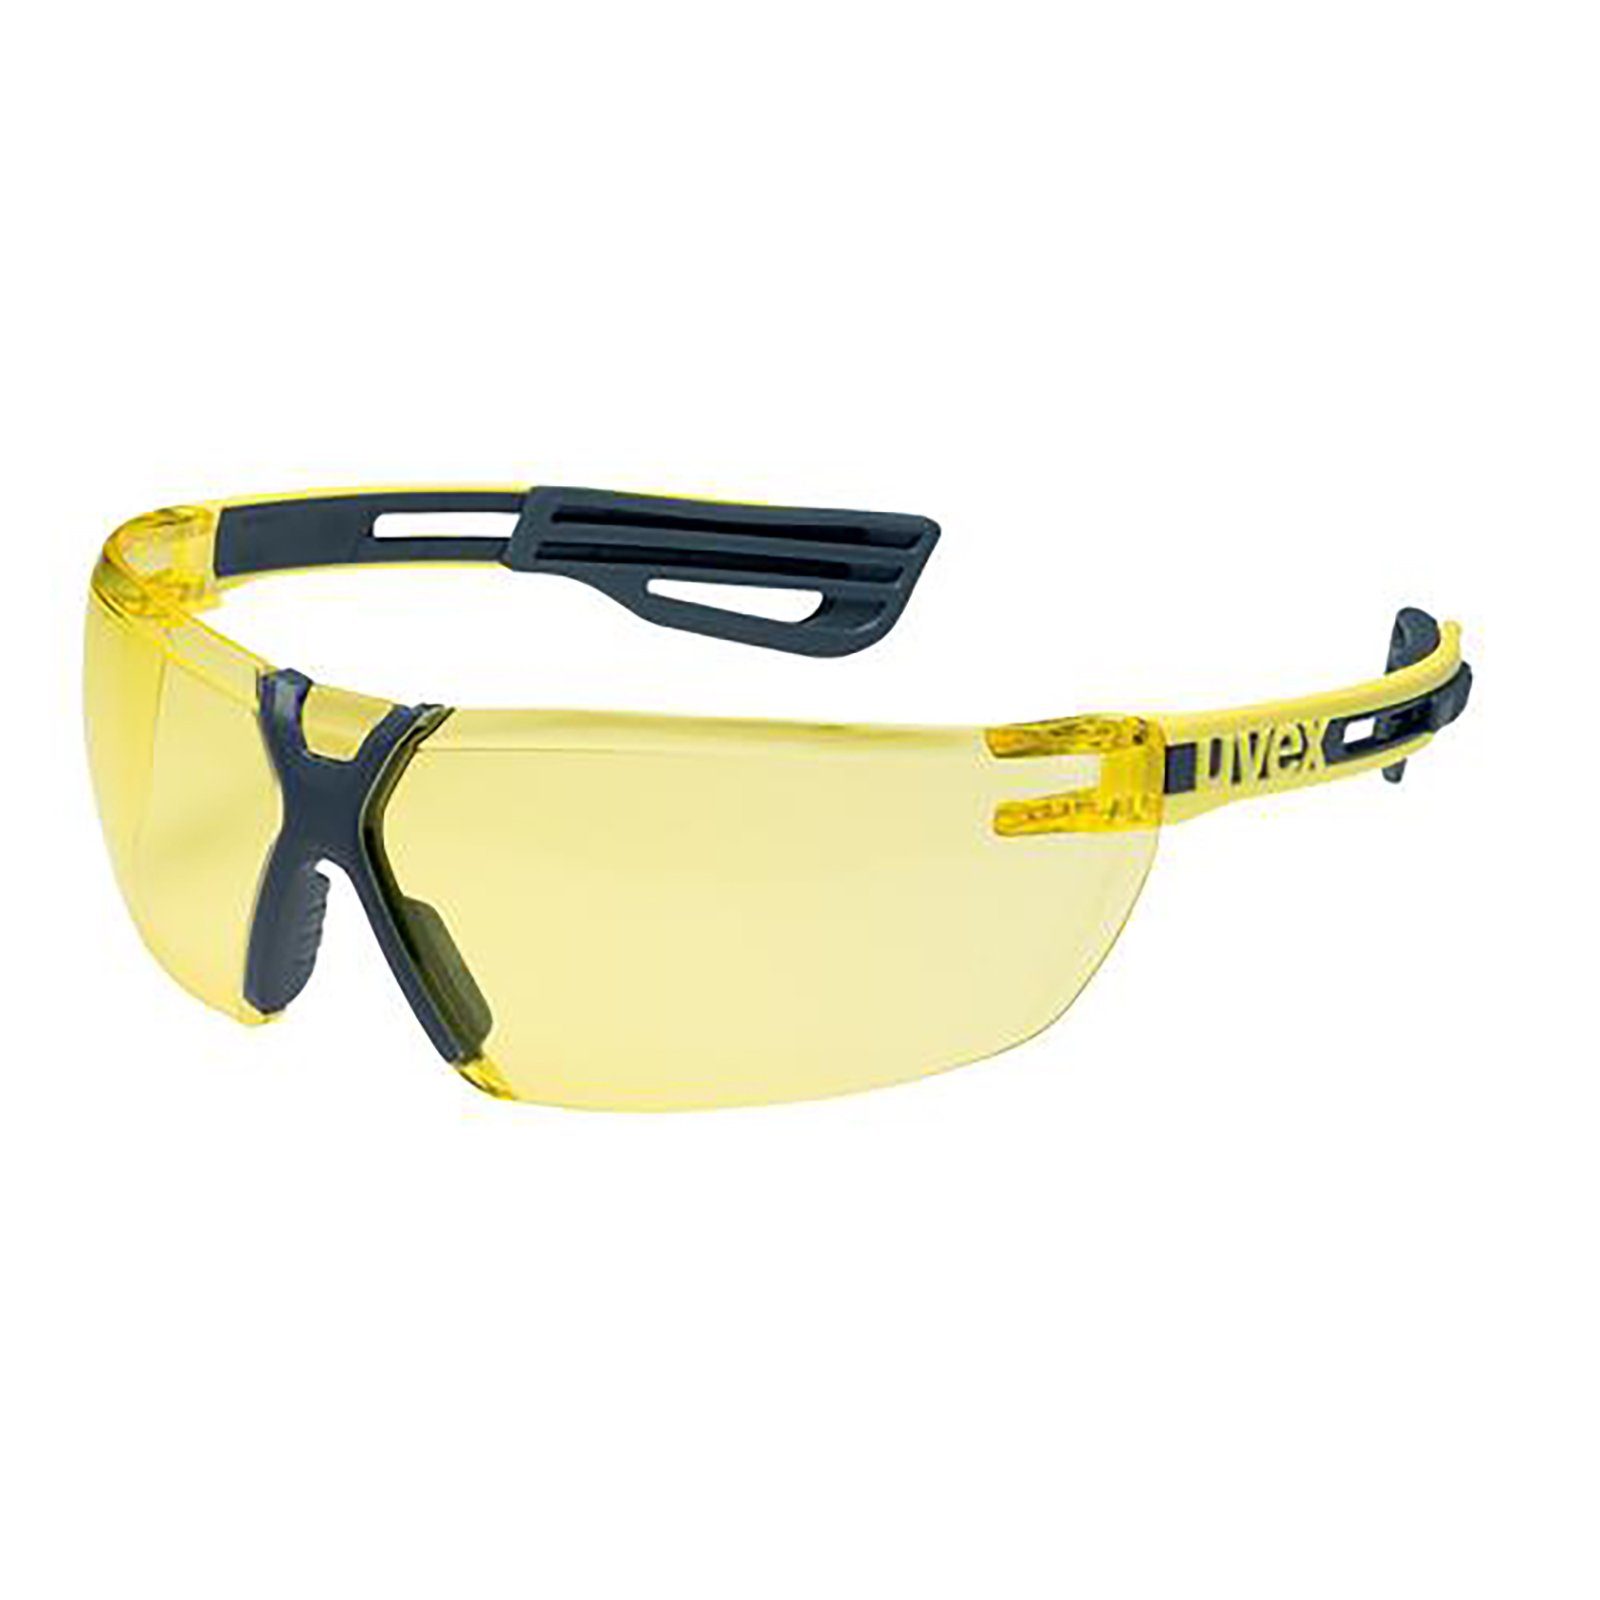 Uvex Arbeitsschutzbrille Bügelbrille x-fit pro amber sv exc. 9199240